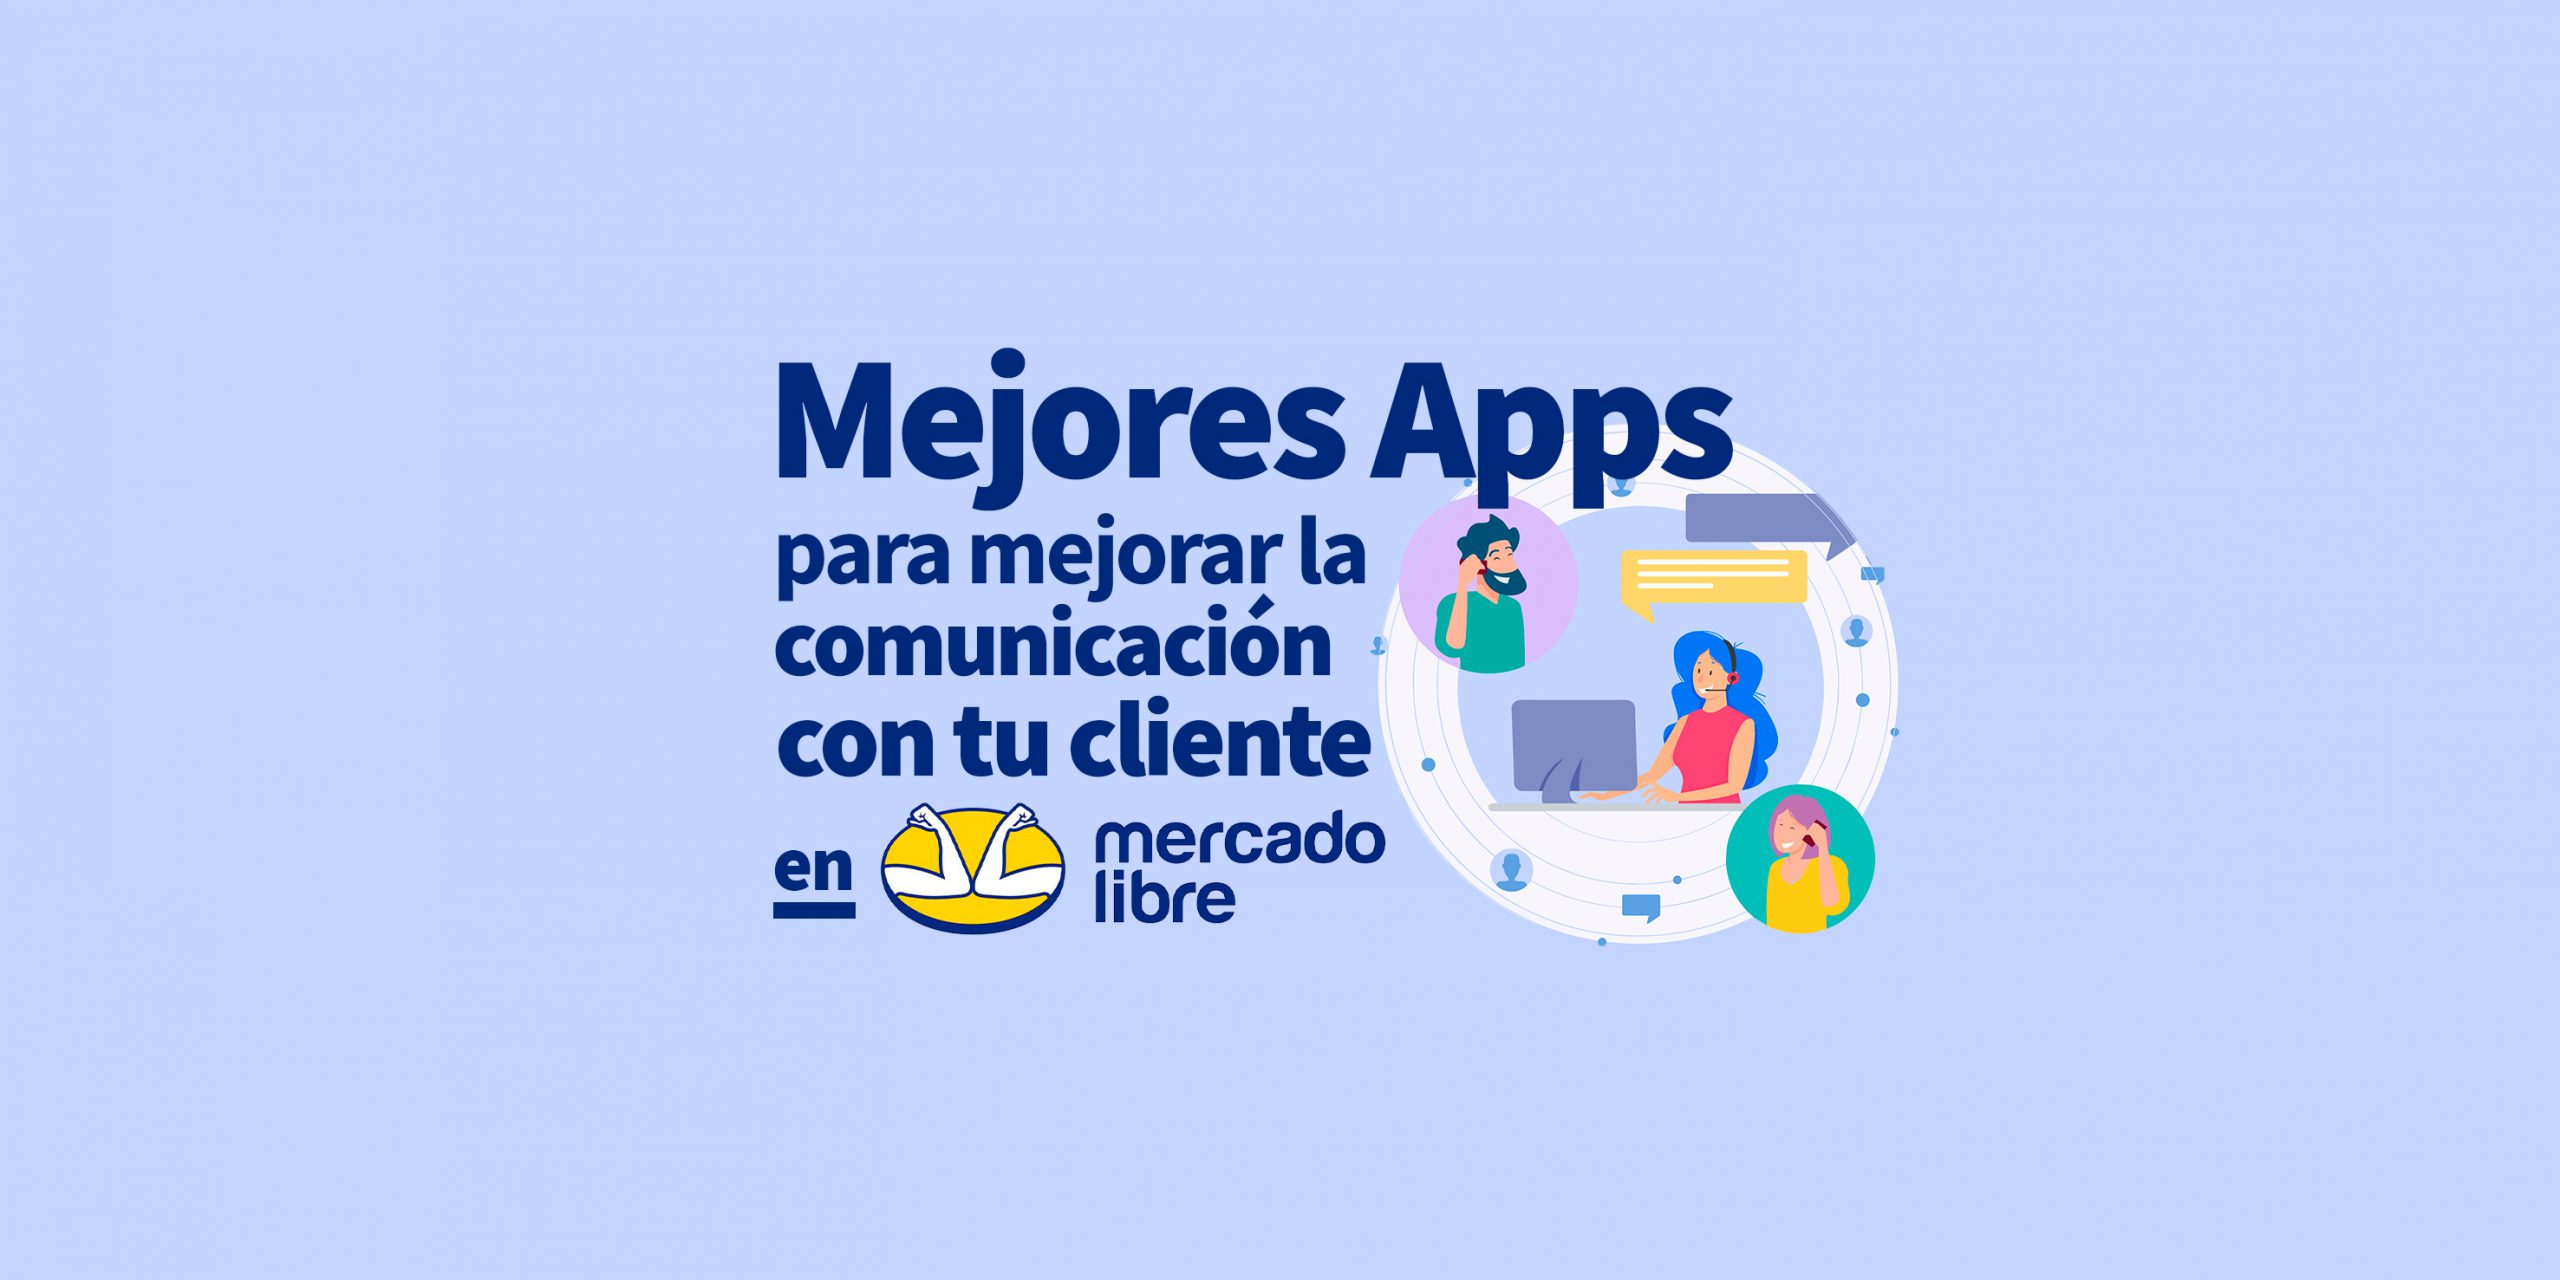 Mejores apps para la comunicación entre comprador y vendedor dentro de Mercado Libre